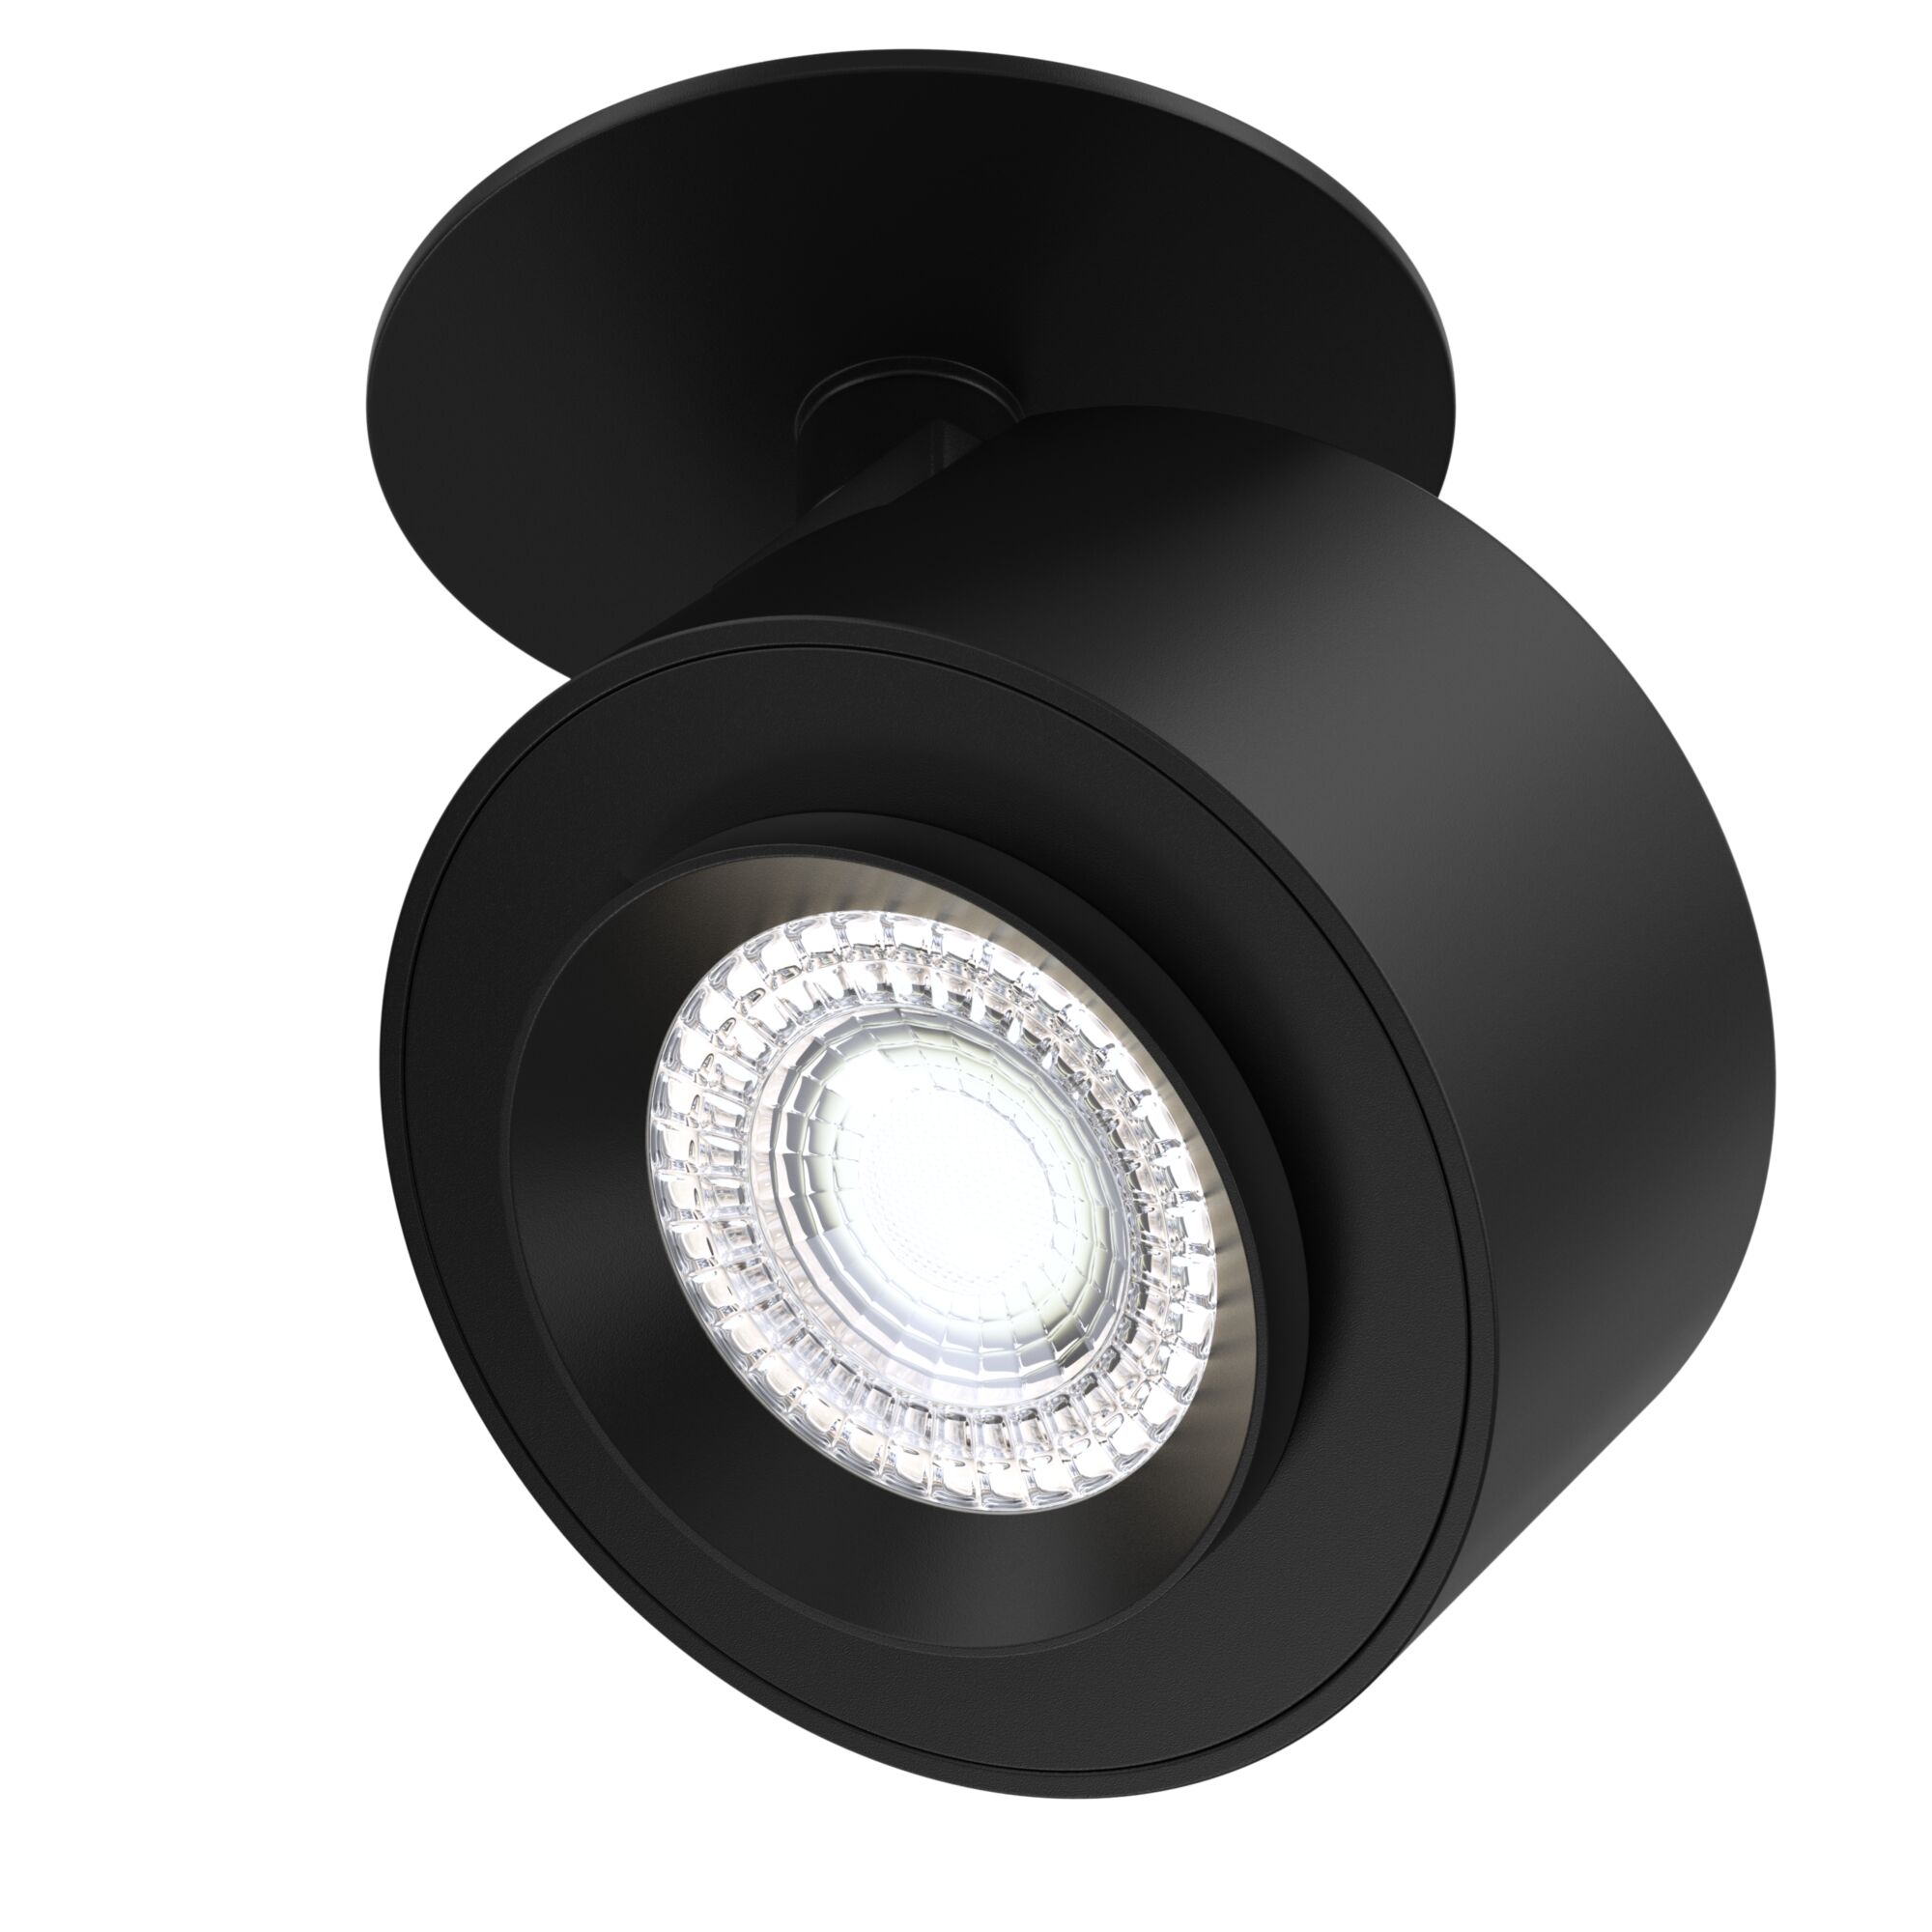 Потолочный светильник Treo 1x13Вт 4000K, C063CL-L12B4K набор аксессуаров для ванной комнаты бесконечность 4 предмета дозатор 400 мл мыльница 2 стакана чёрный